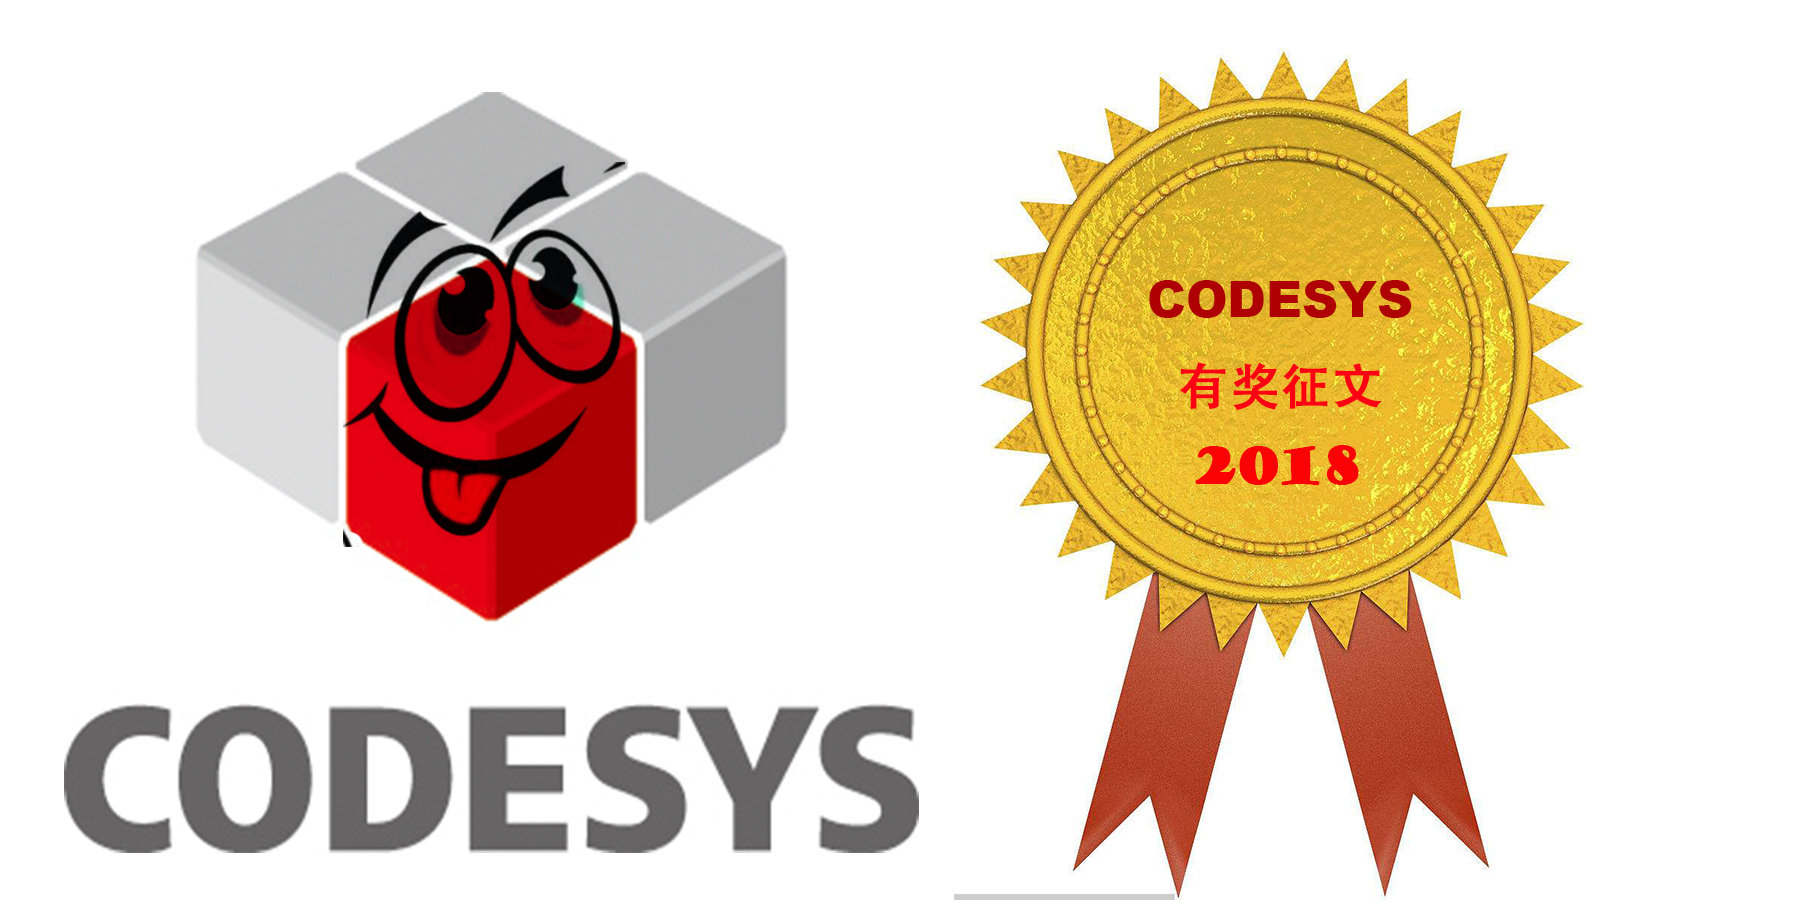 2018年CODESYS有奖征文活动已开启！